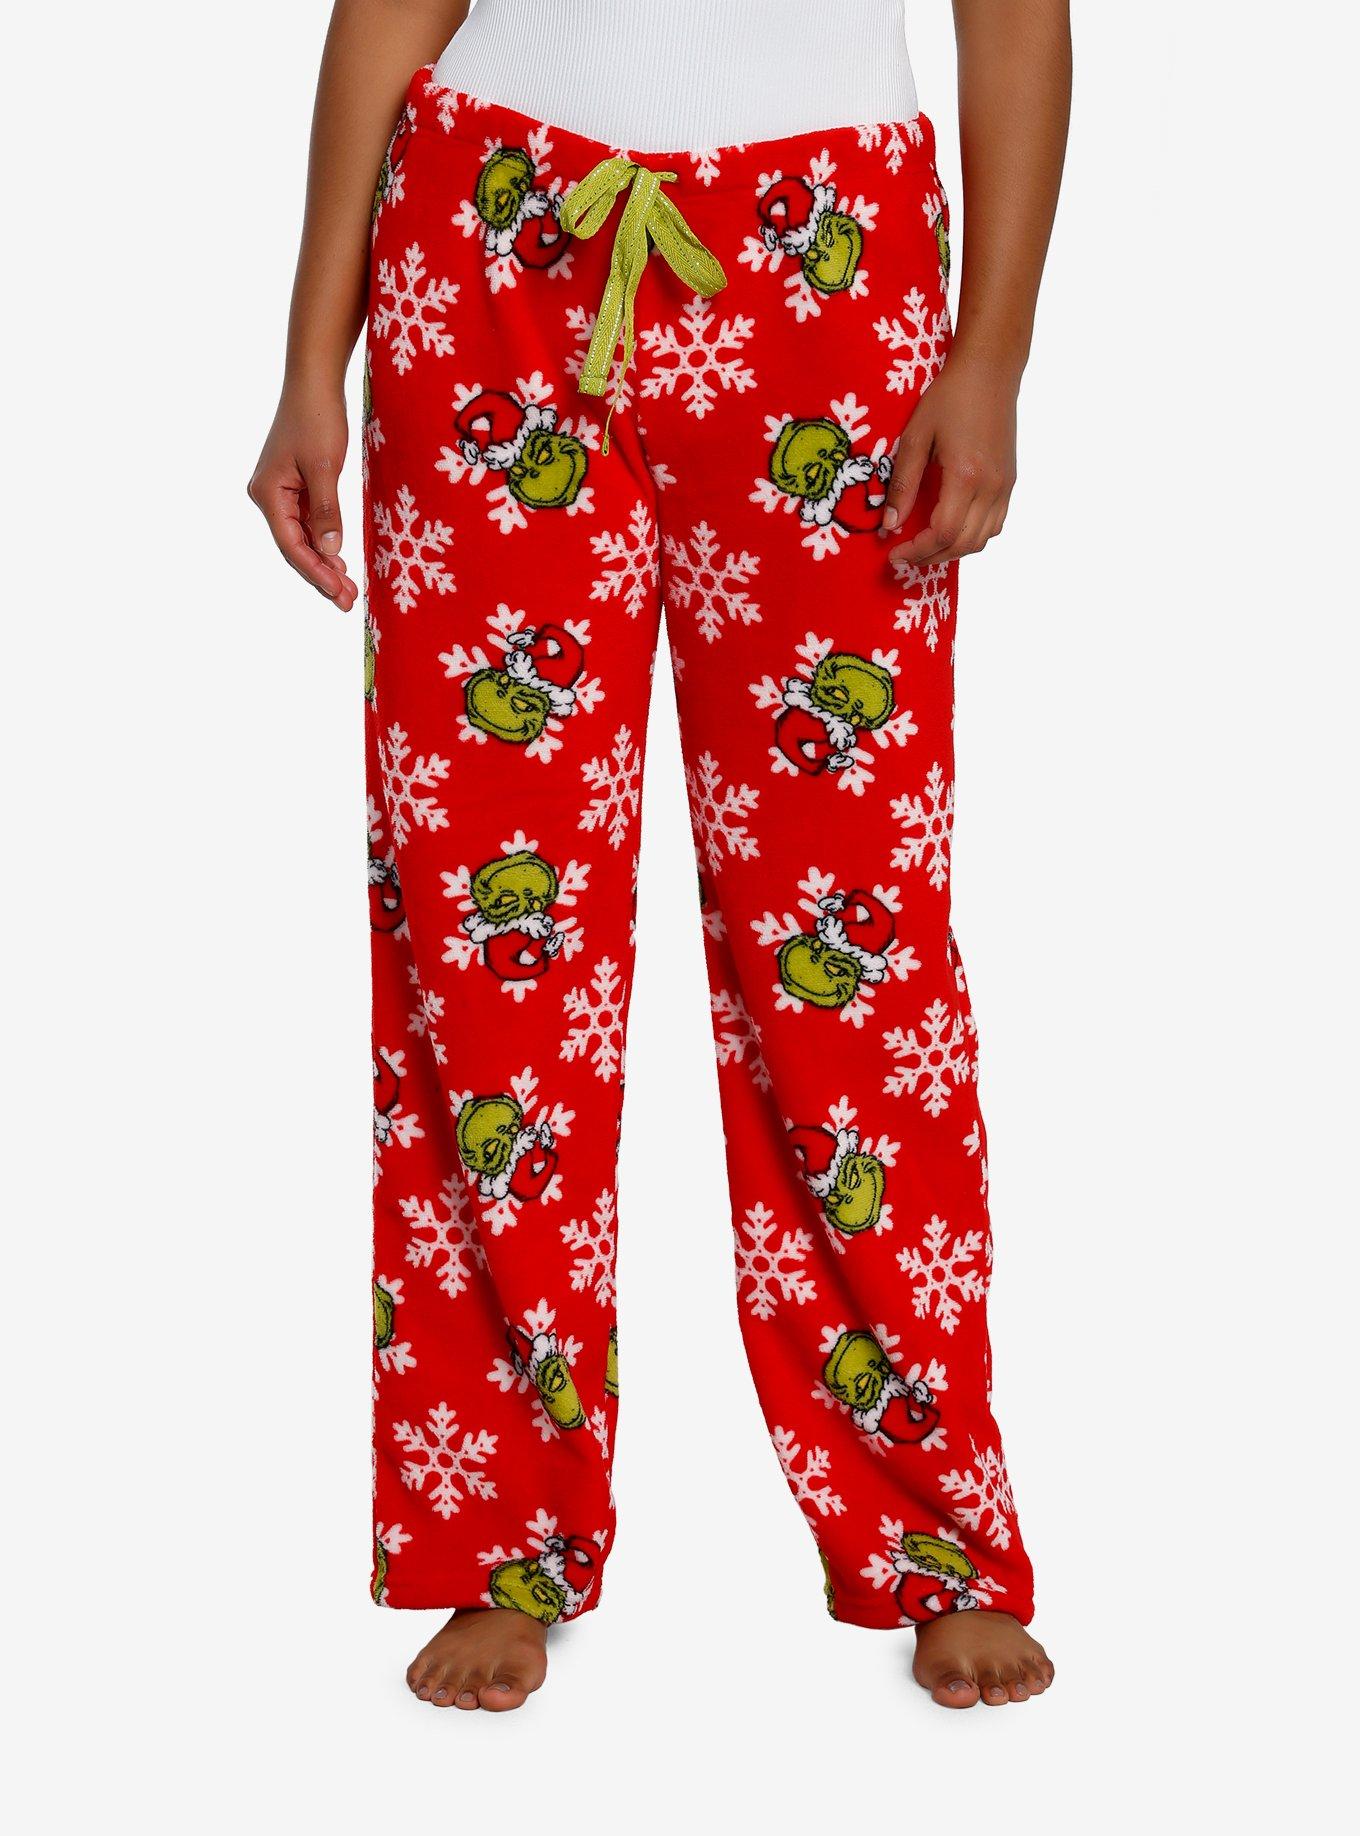 The Grinch Women's Pajamas Pants Size S- 3X Plus Joggers Dr Seuss